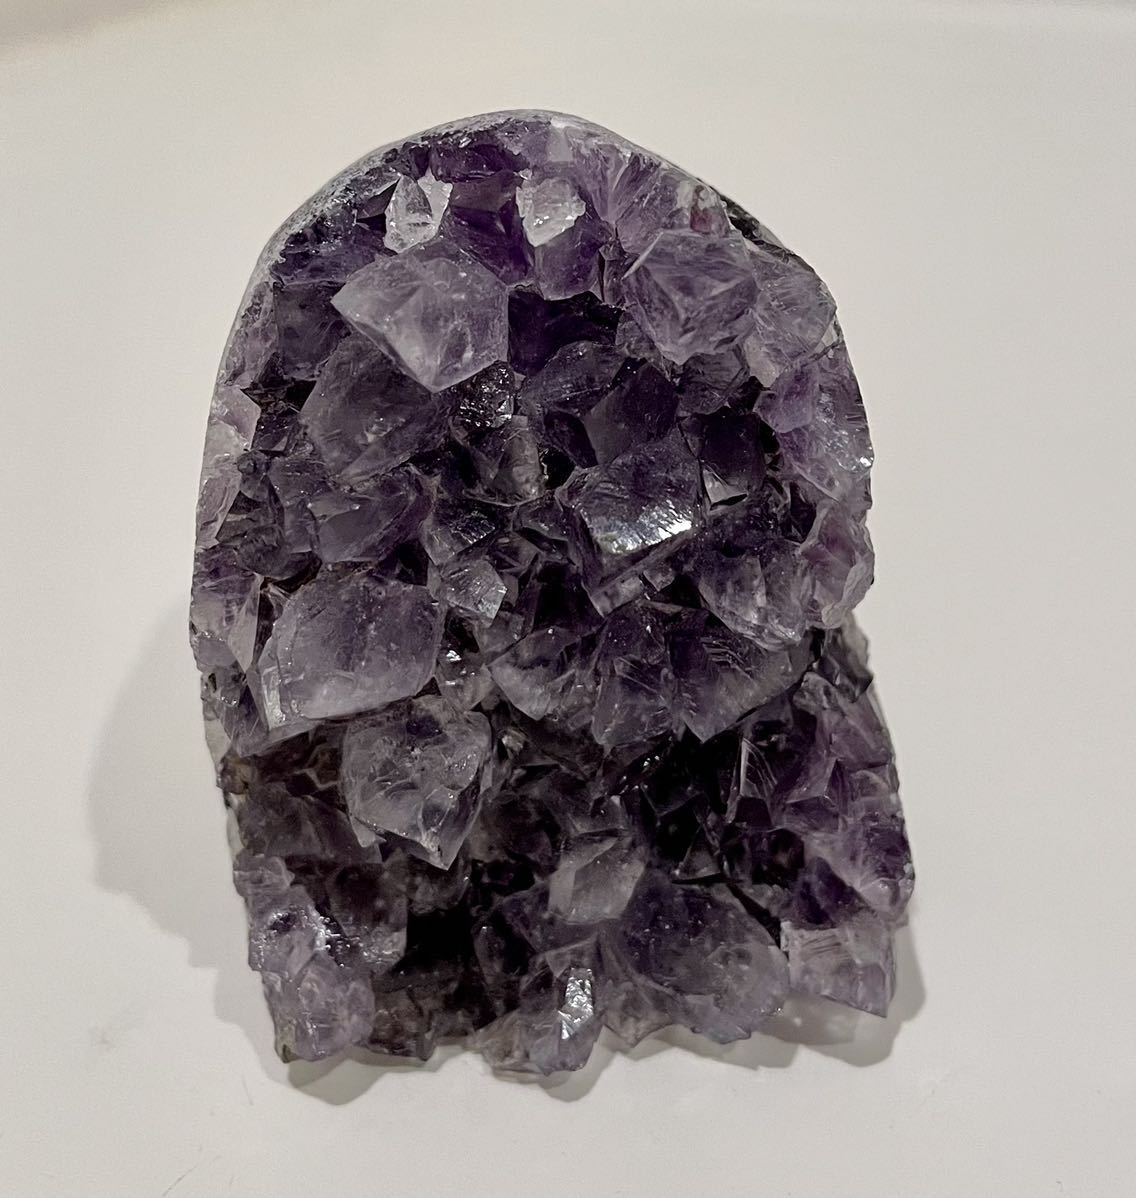 ミニアメジストドーム 003 クラスター 紫水晶 クリスタル 高品質原石 